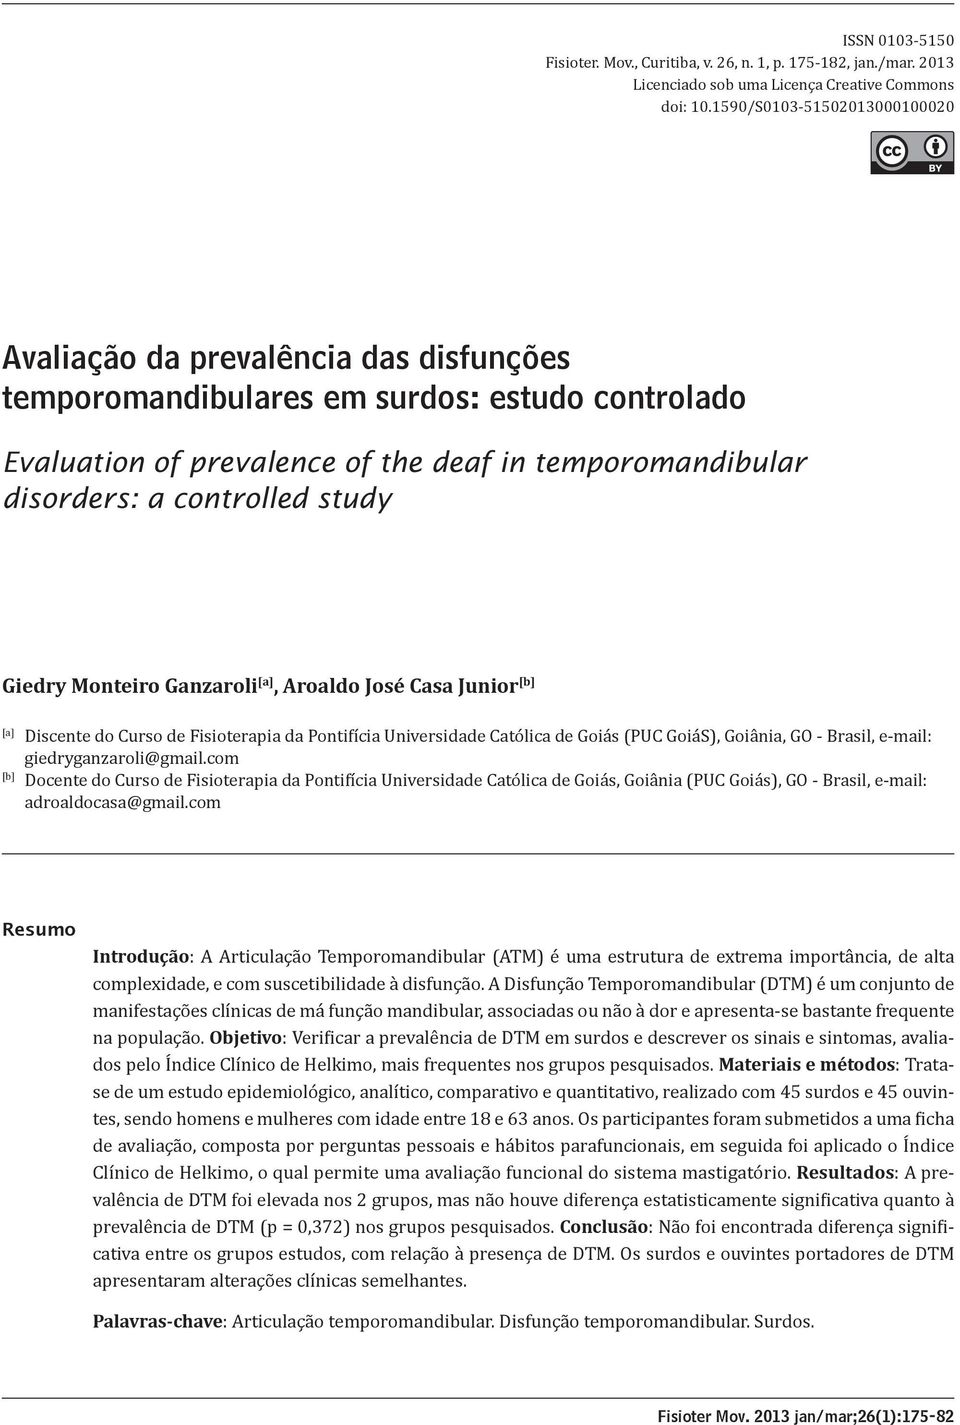 controlled study [A] Giedry Monteiro Ganzaroli [a], Aroaldo José Casa Junior [b] [a] [b] Discente do Curso de Fisioterapia da Pontifícia Universidade Católica de Goiás (PUC GoiáS), Goiânia, GO -